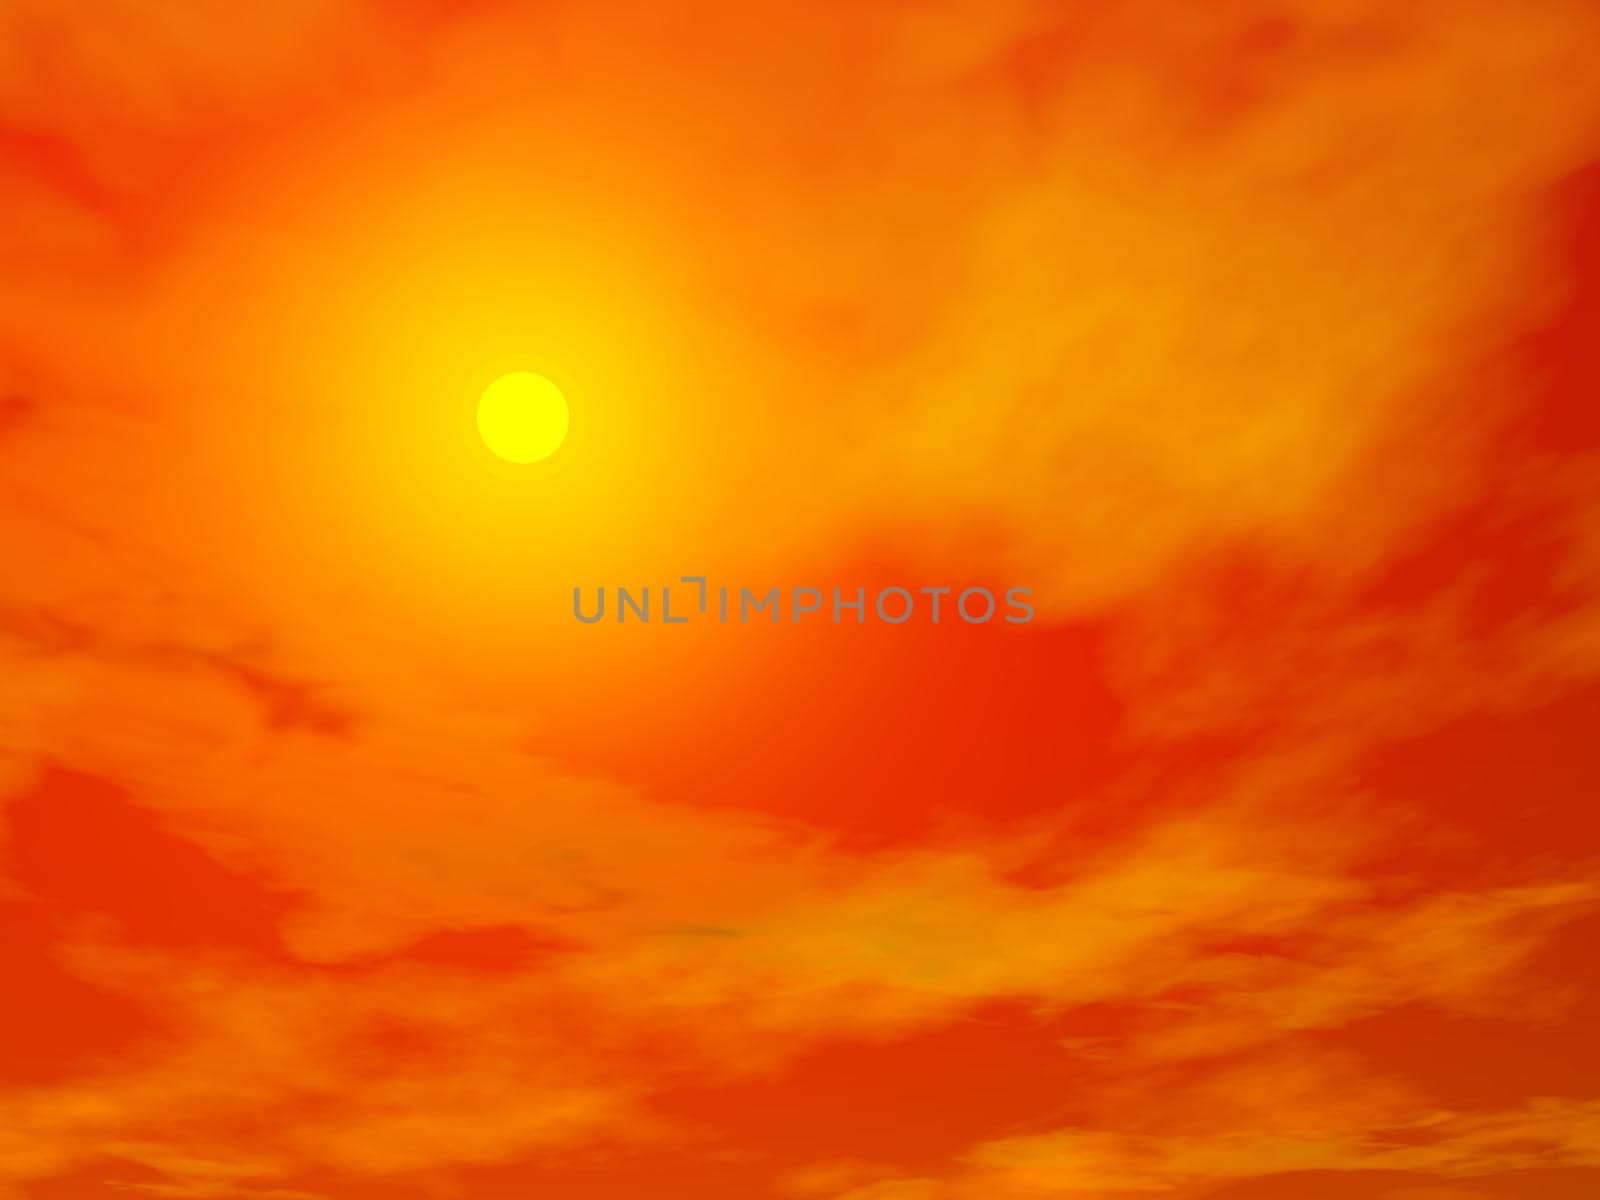 Sunset - 3D render by Elenaphotos21